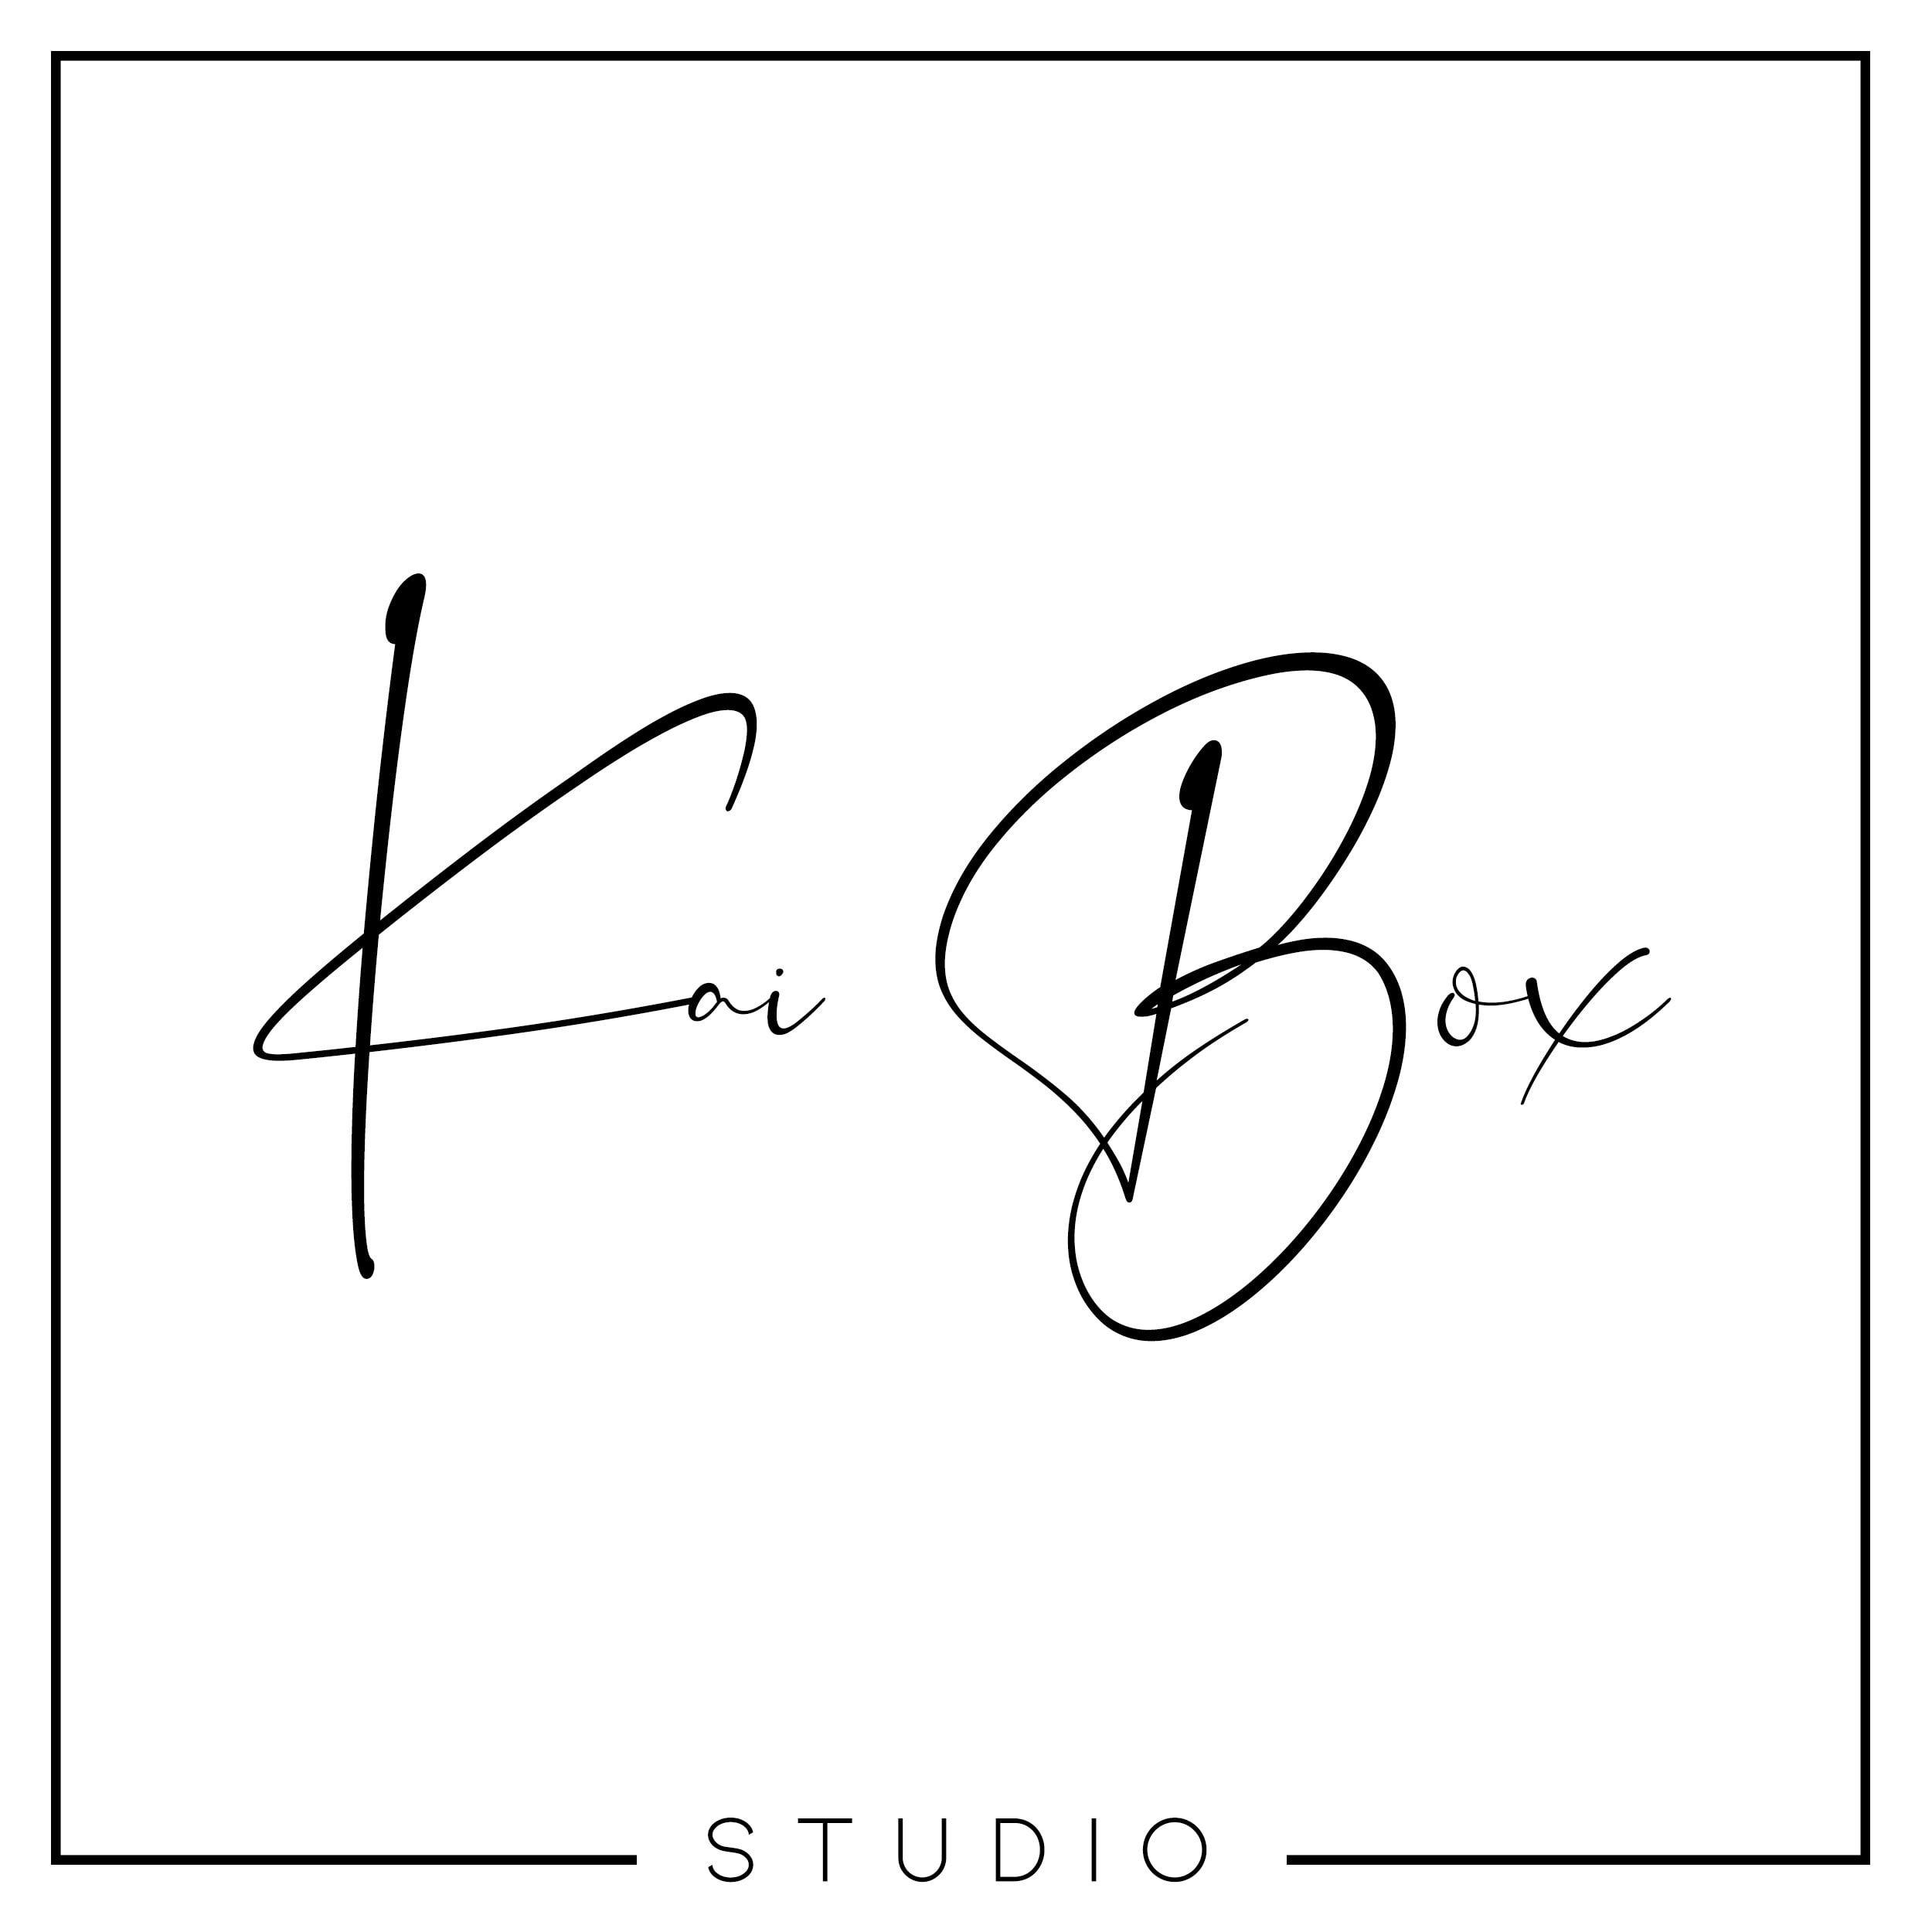 Kai Box Studio